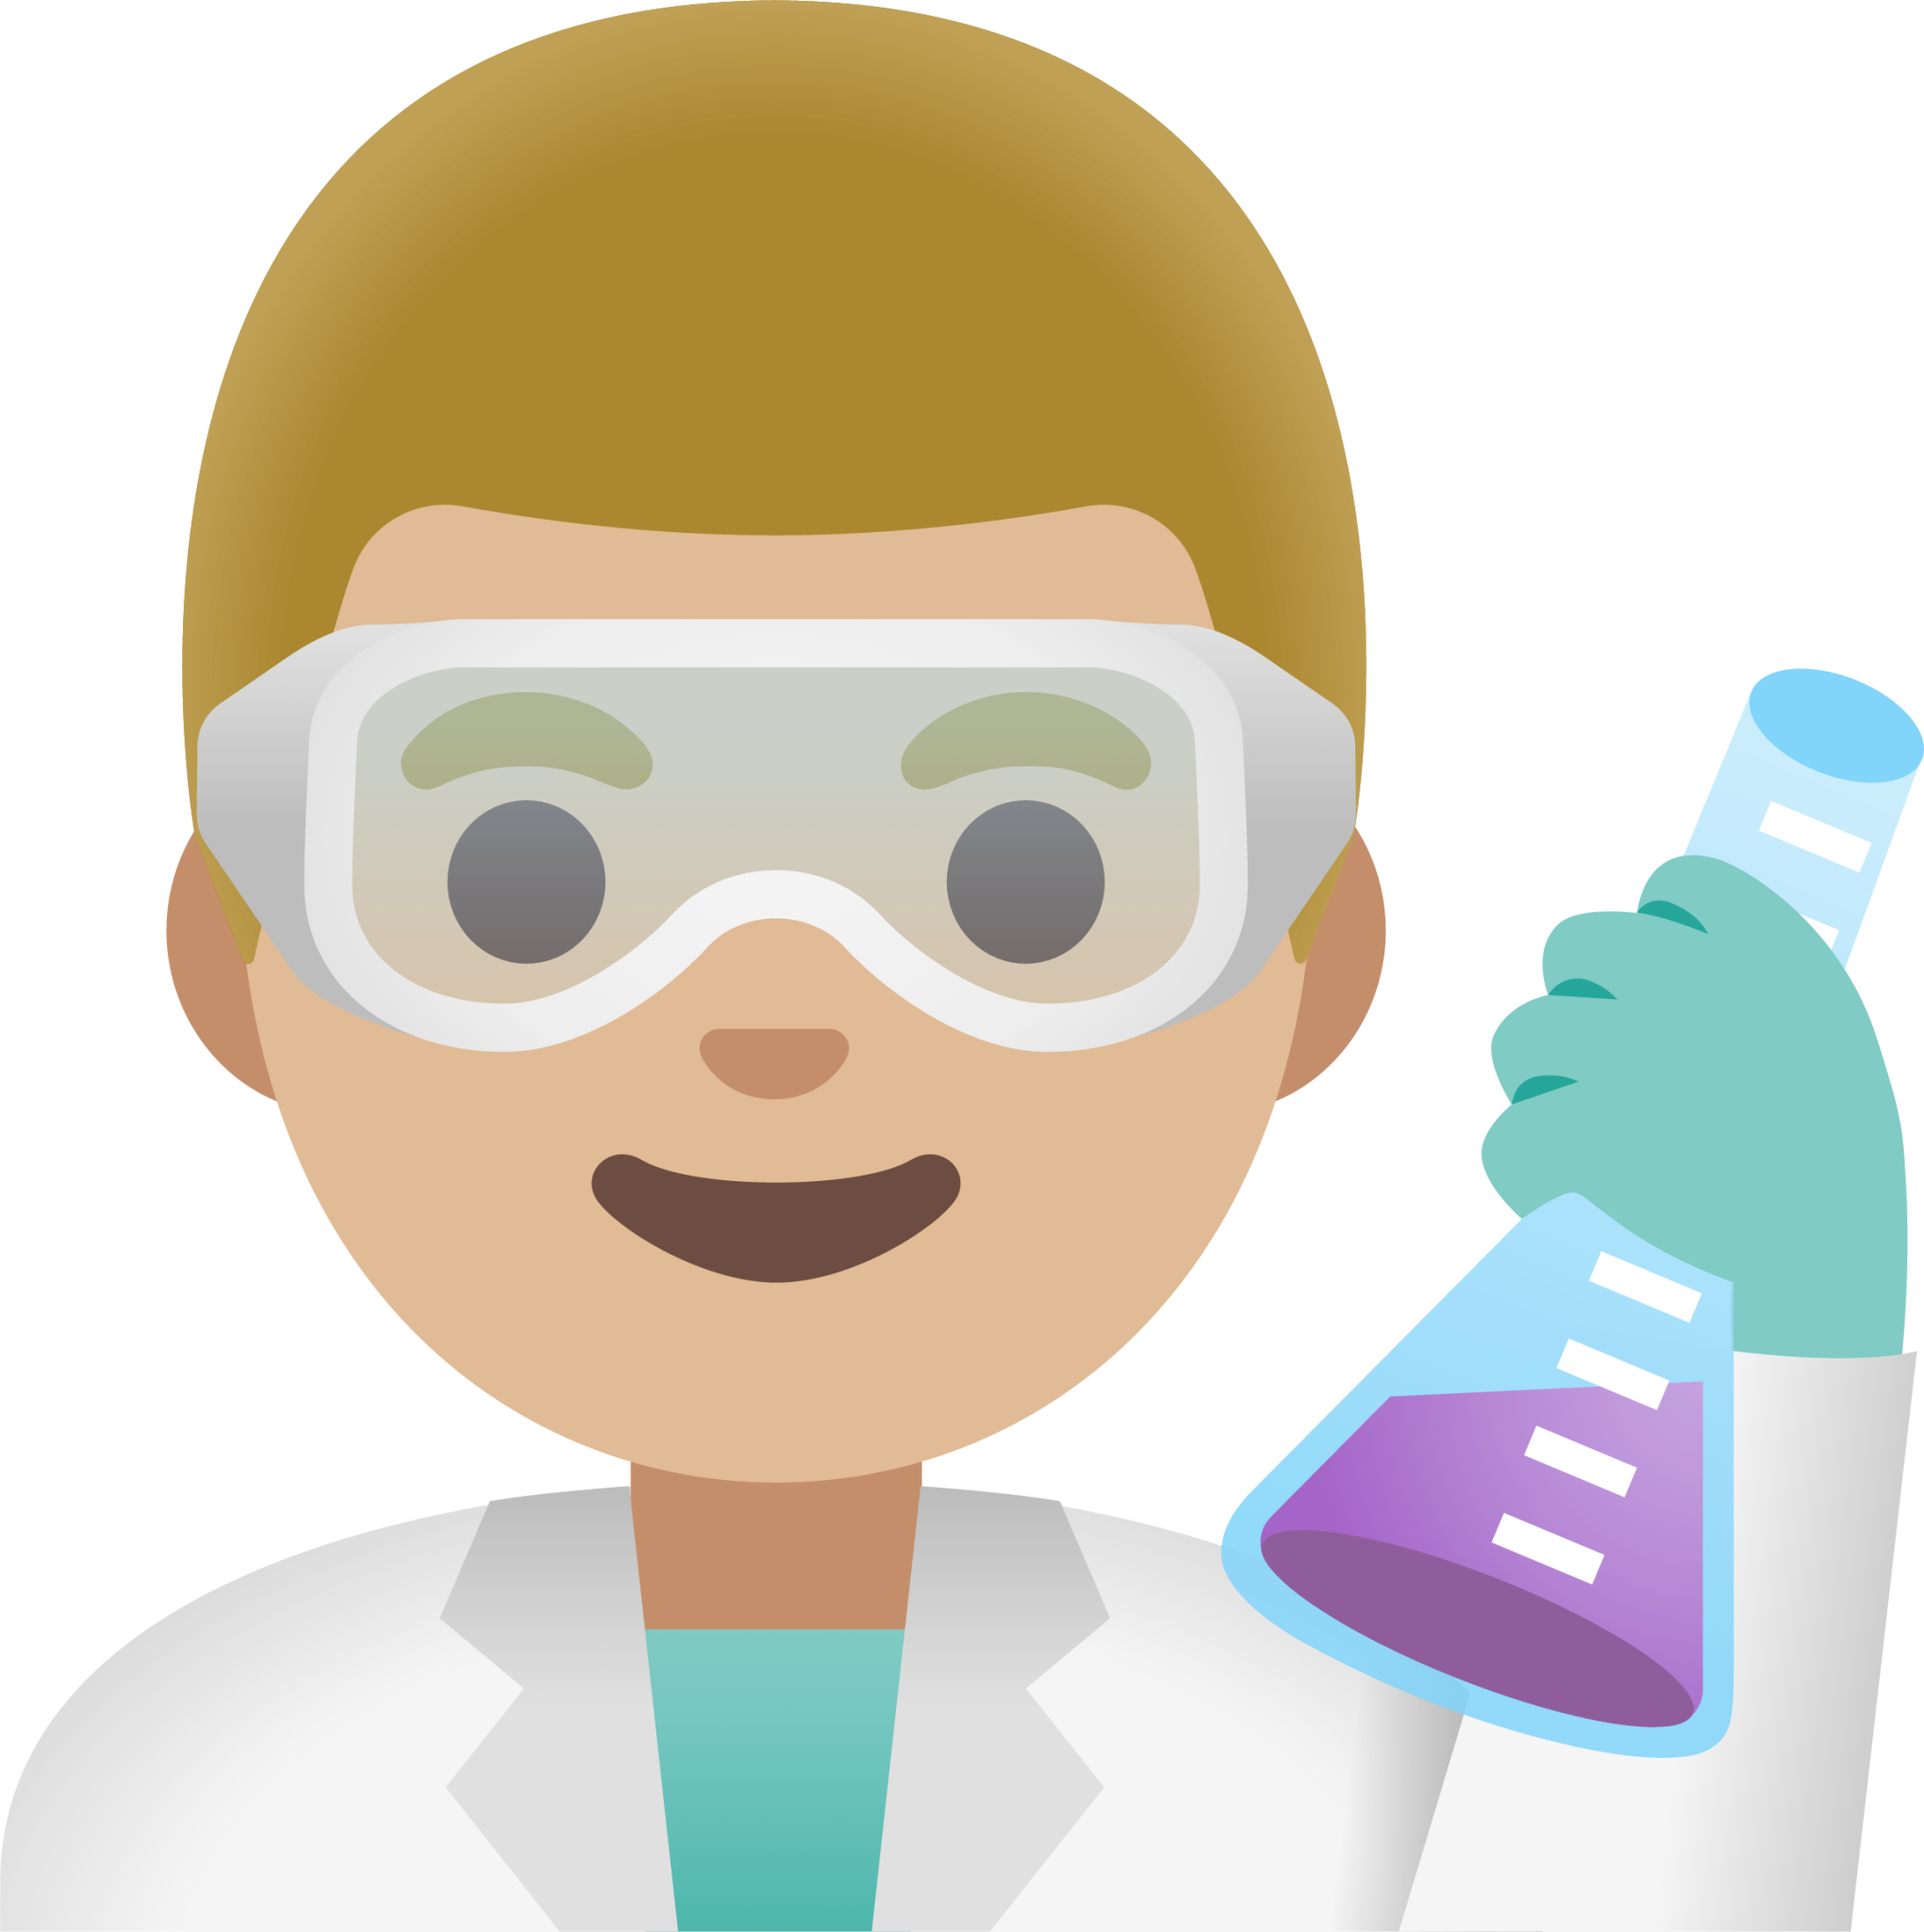 man scientist: medium-light skin tone emoji